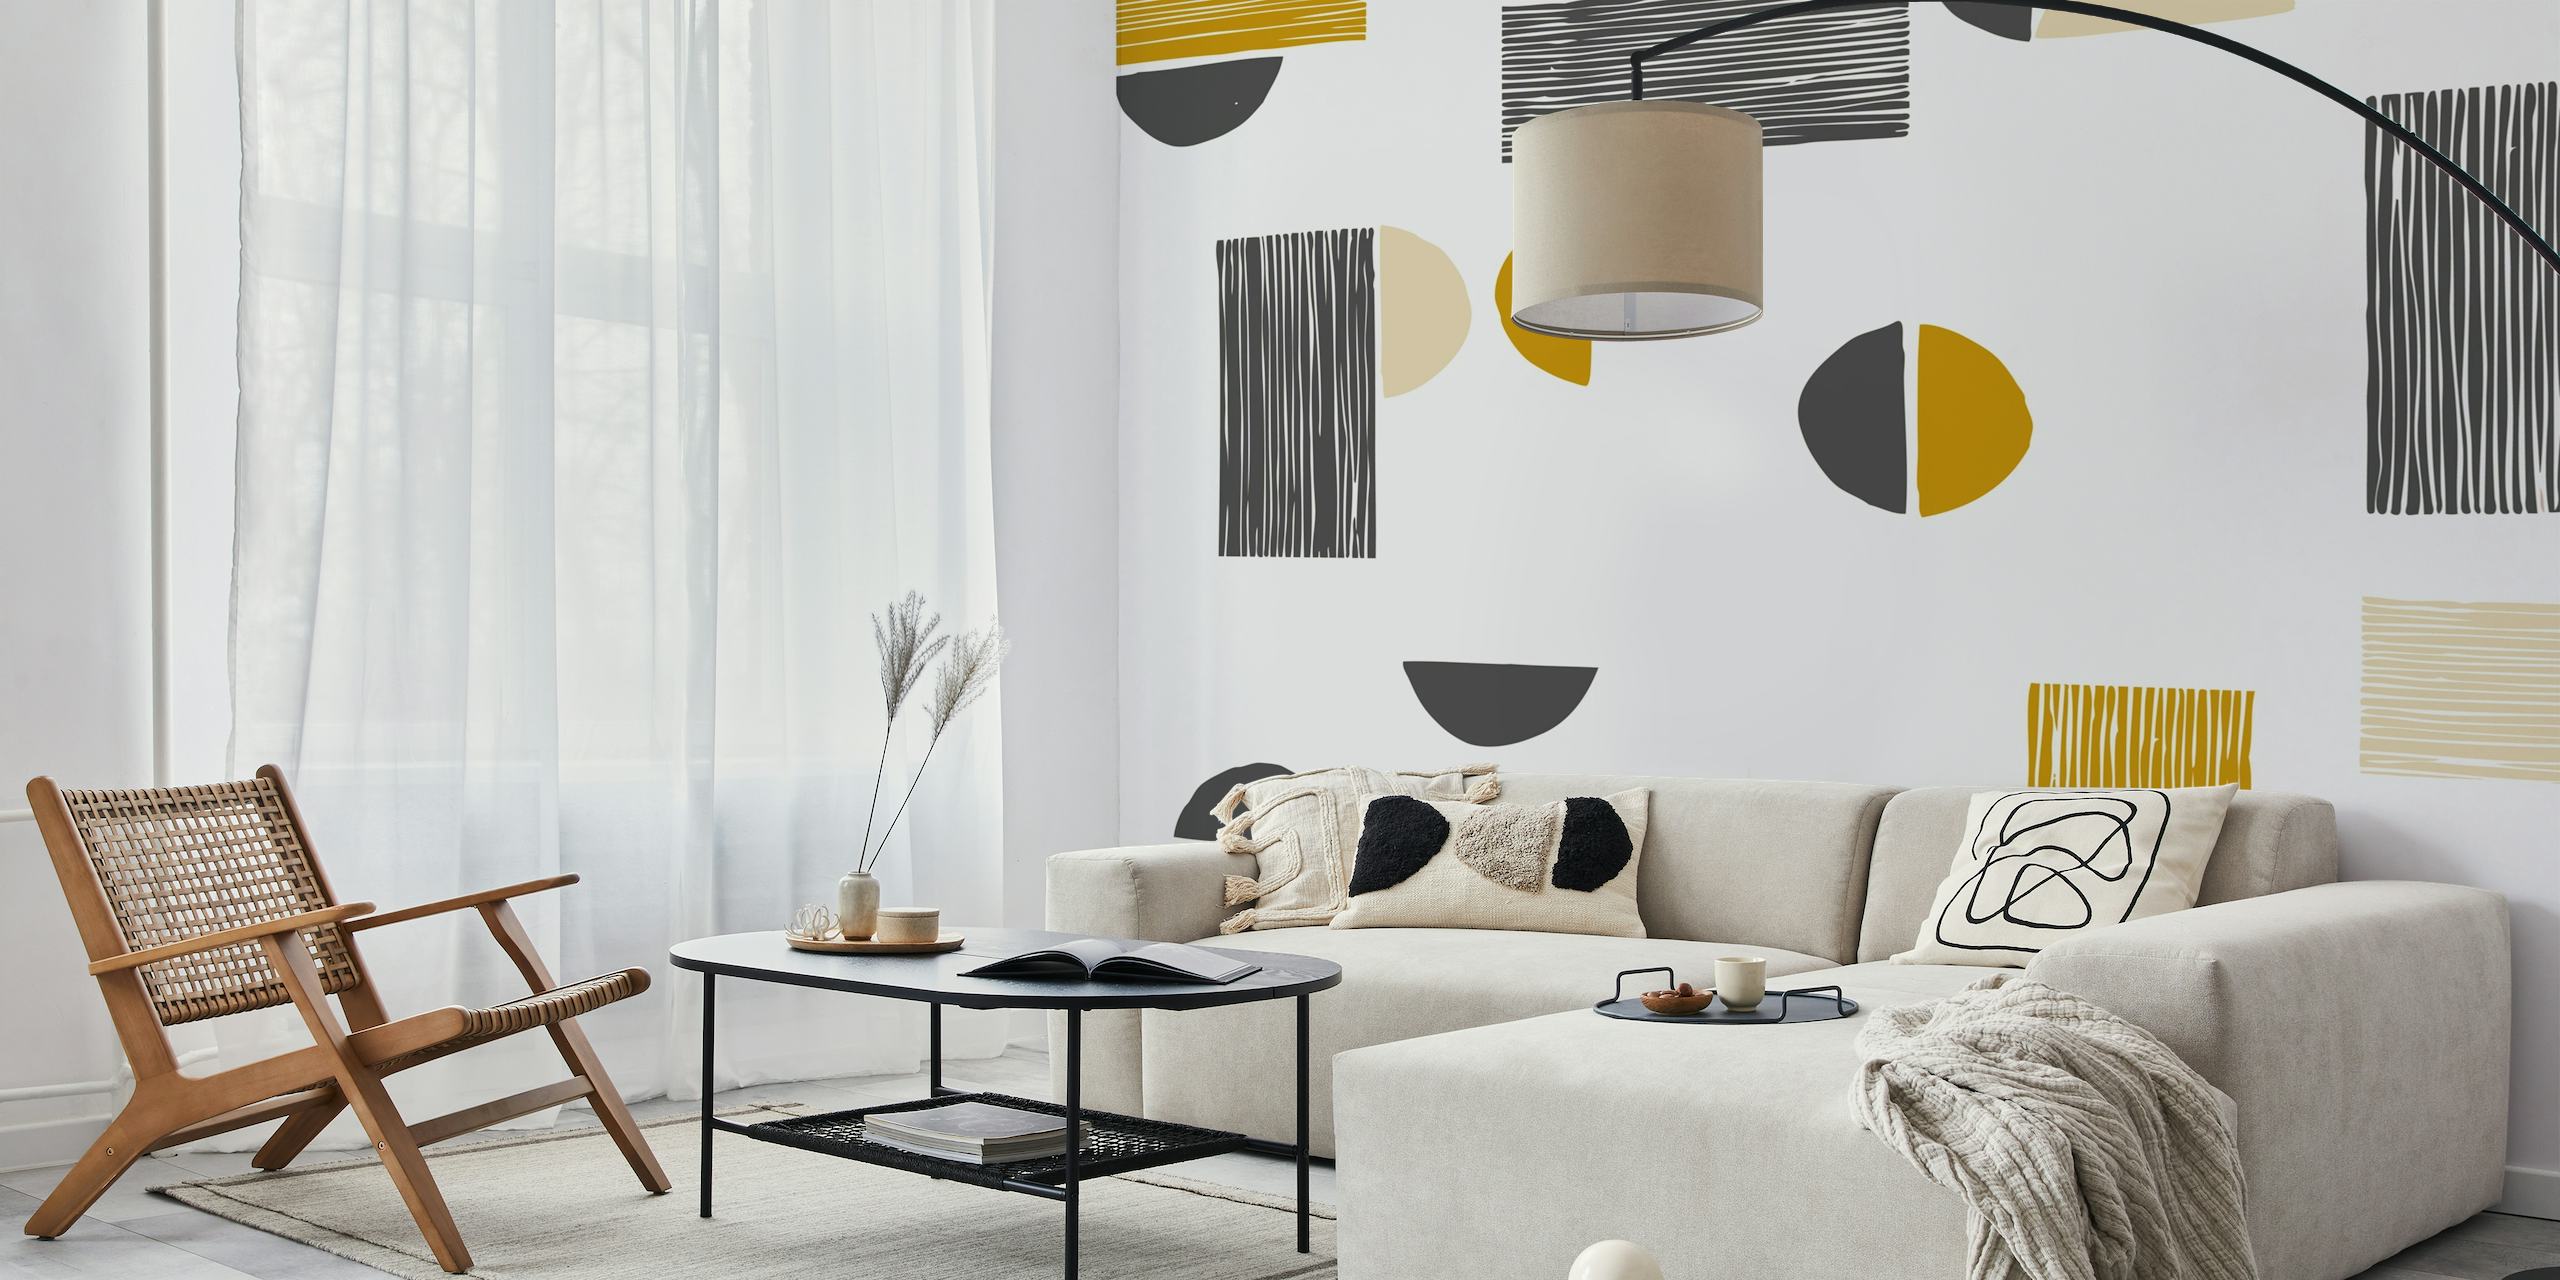 Modernes gestreiftes und sichelförmiges Wandbild mit geometrischen Formen in gedämpften Gold-, Schwarz-, Grau- und Cremefarben